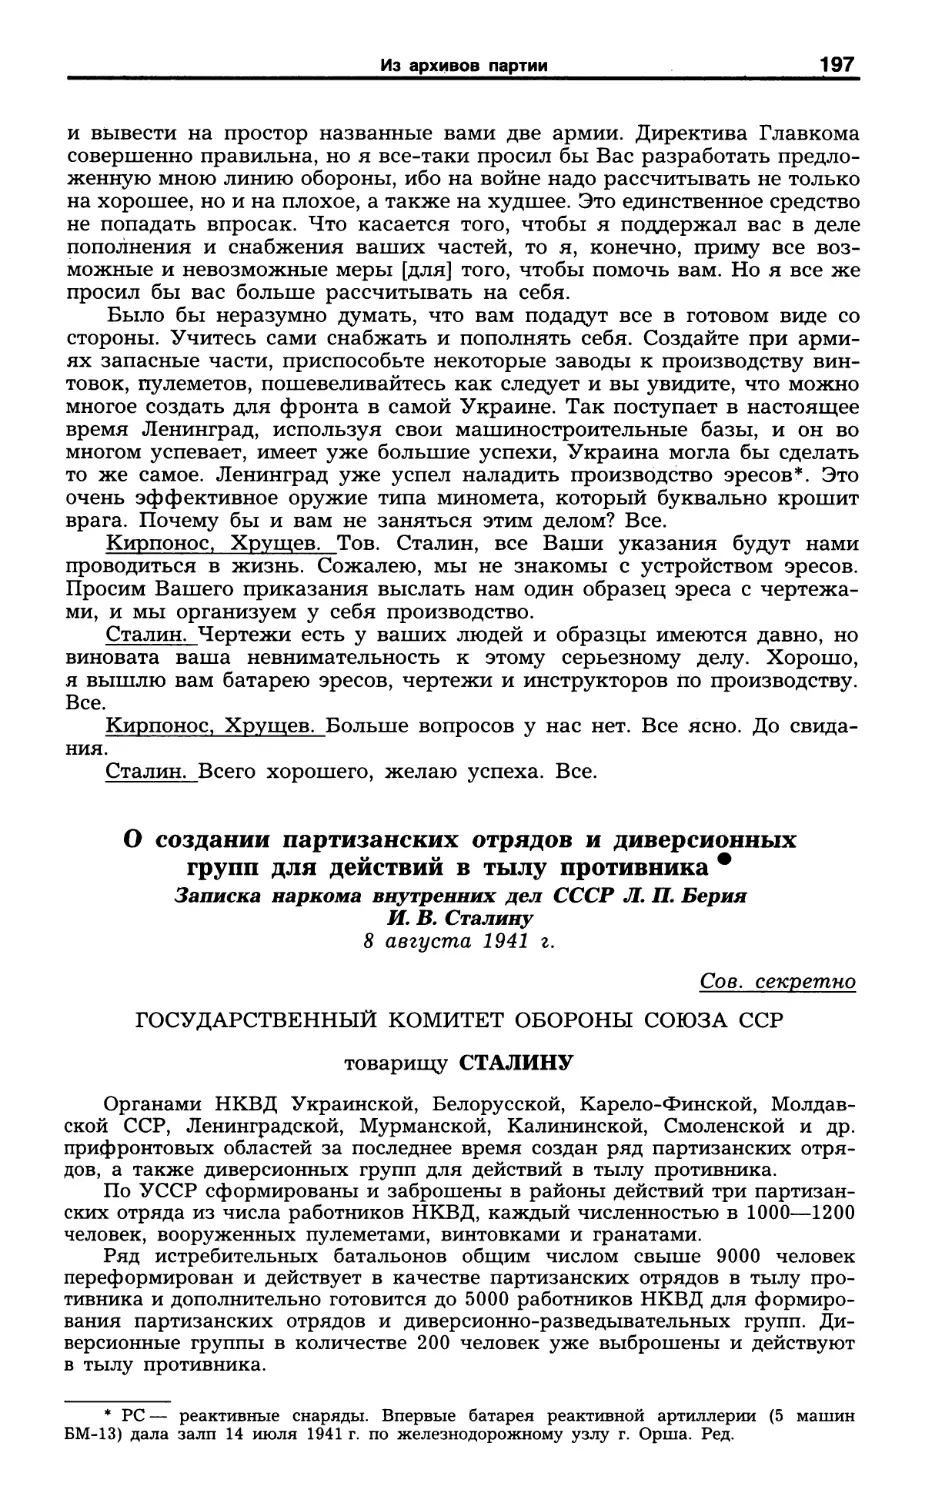 О создании партизанских отрядов и диверсионных групп. 8 августа 1941 г